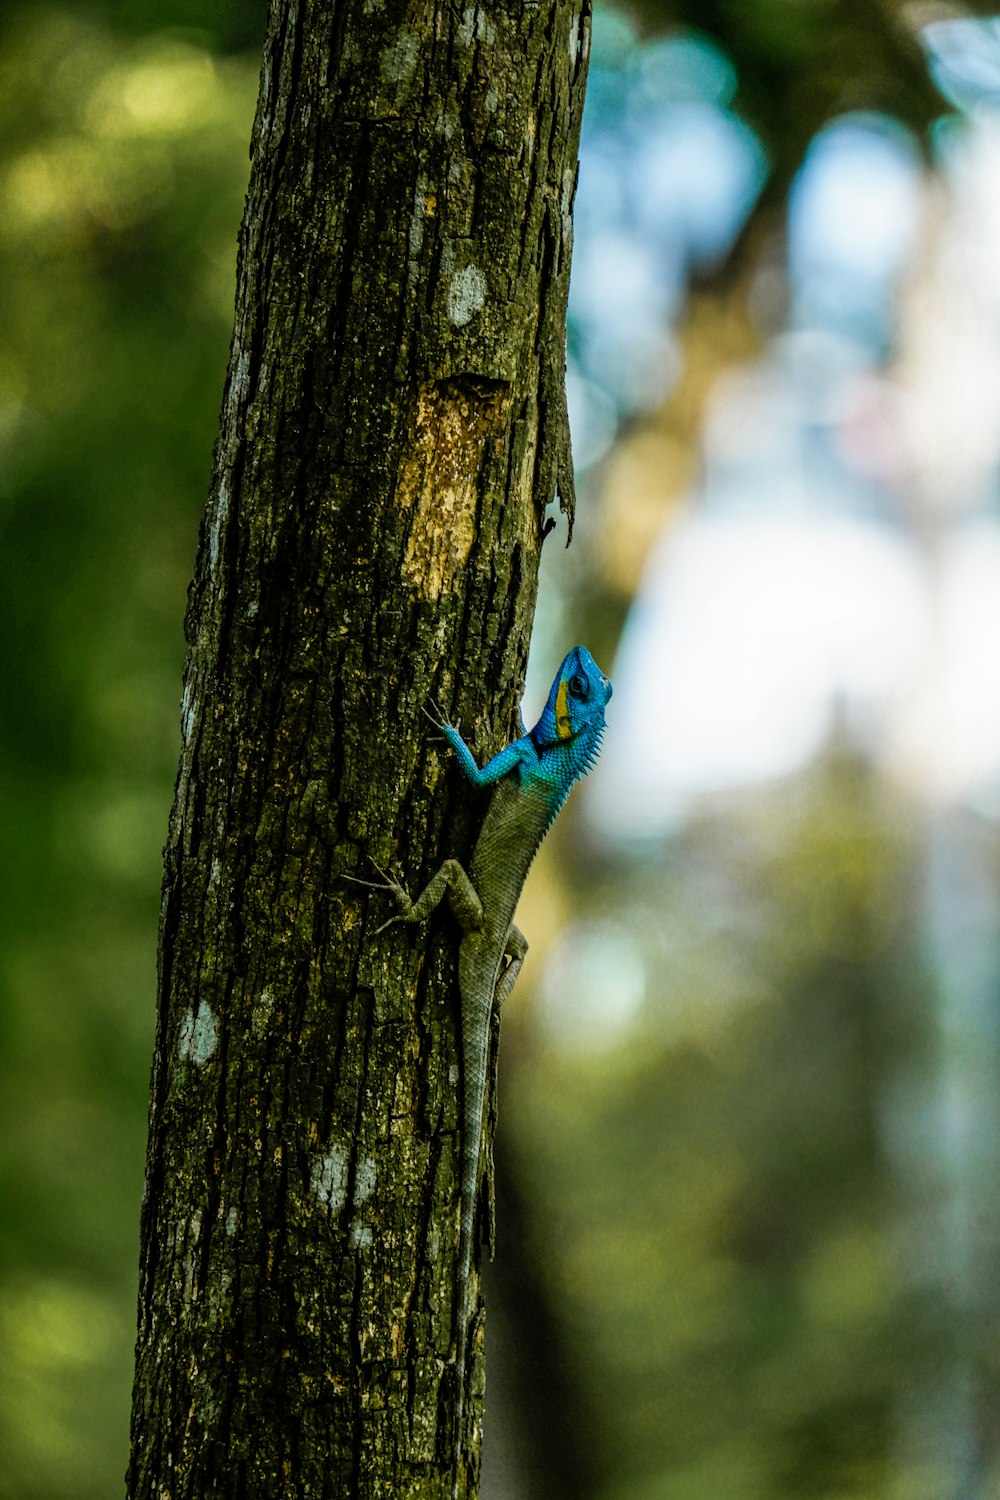 a blue lizard on a tree